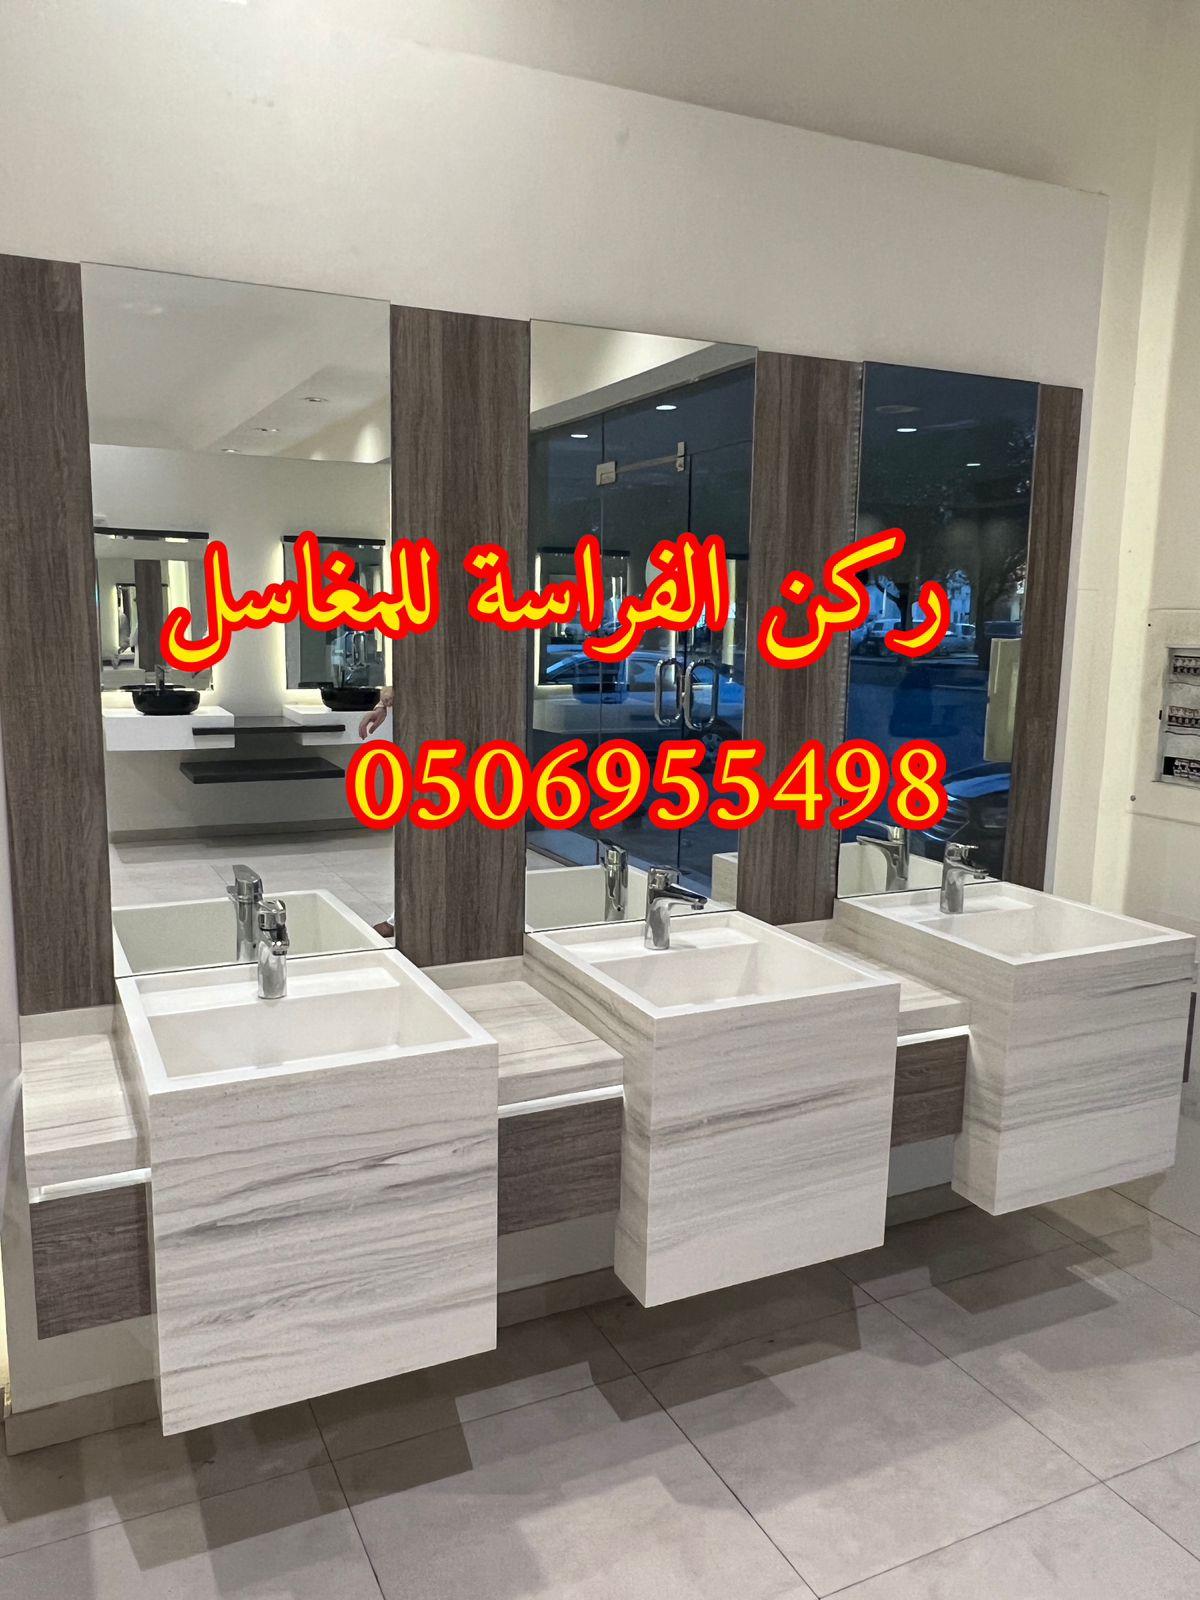 مغاسل حمامات رخام مودرن فخمة في الرياض,0506955498 828704998